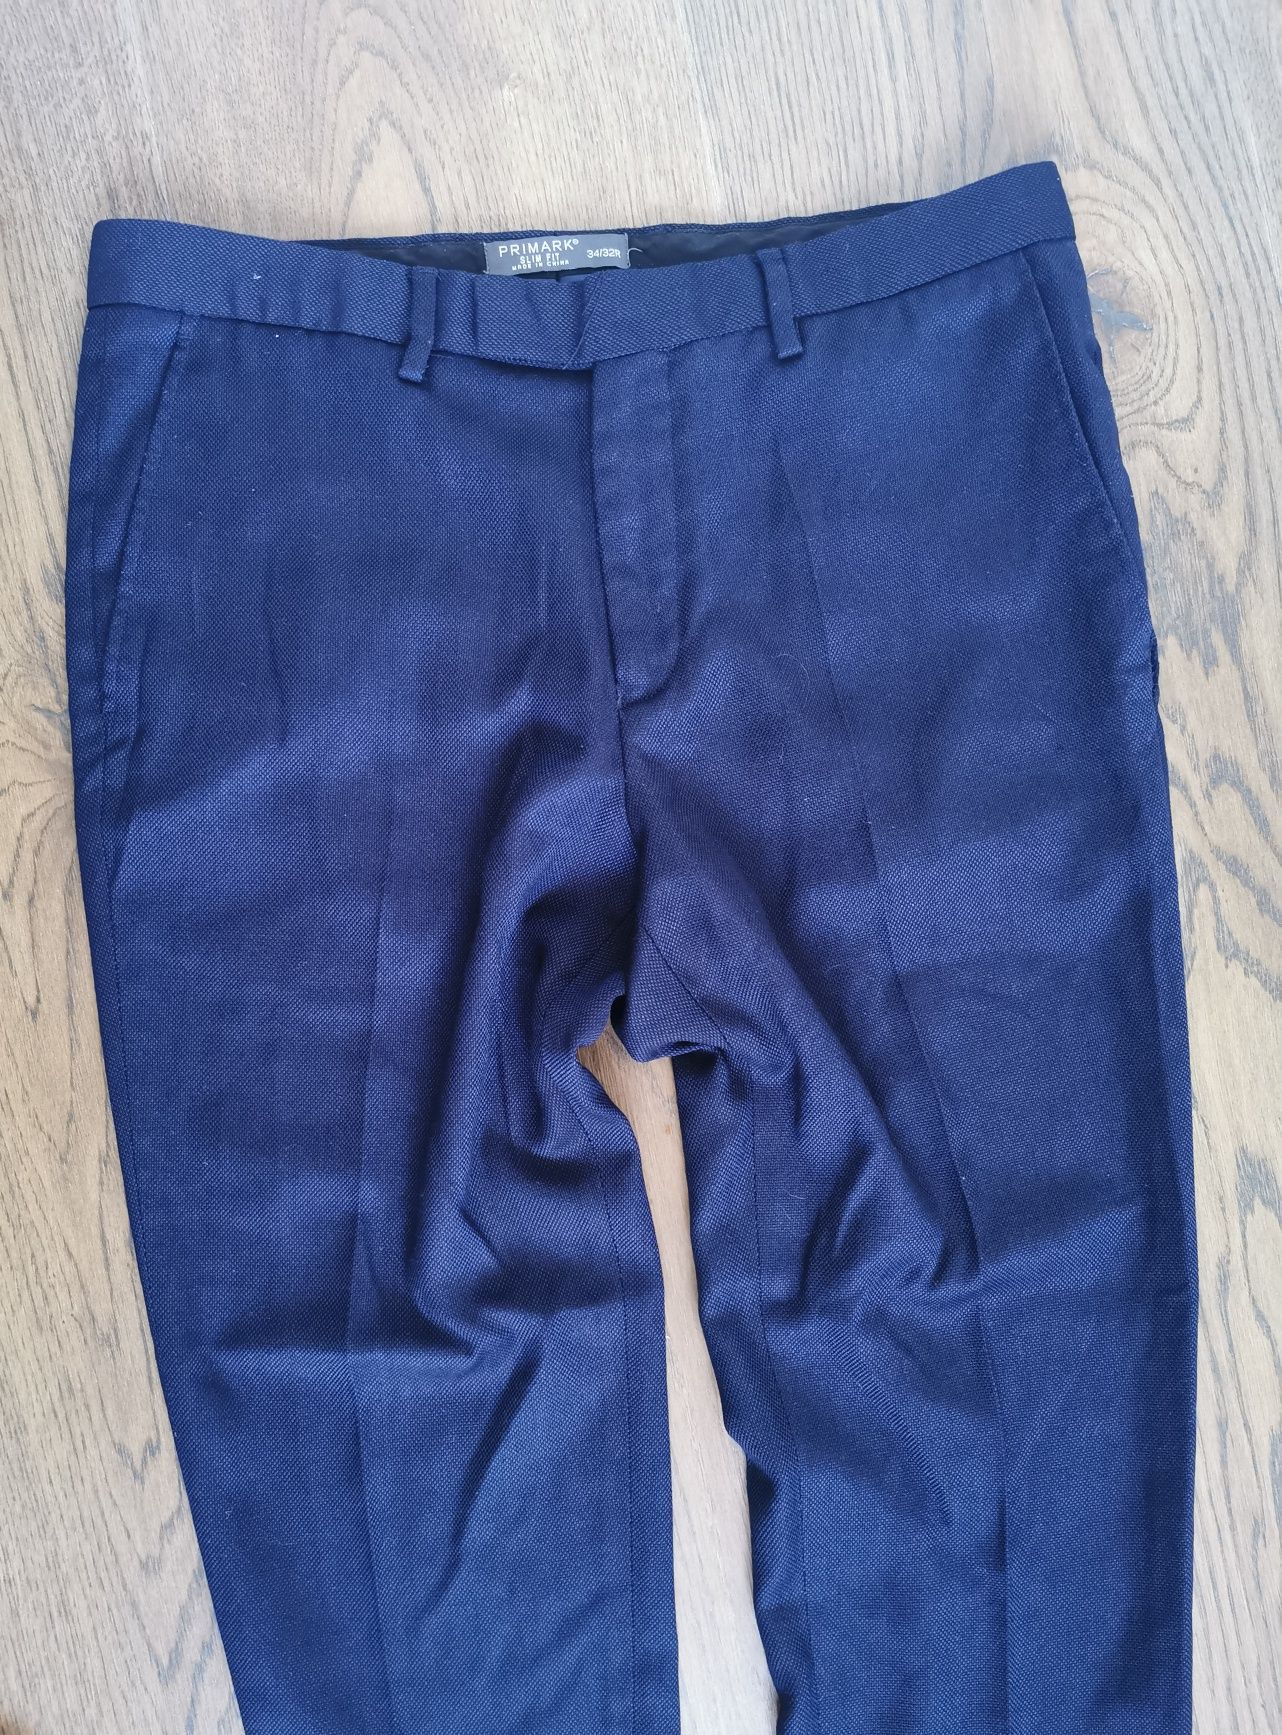 Granatowe, eleganckie spodnie na kant, rozmiar 44R